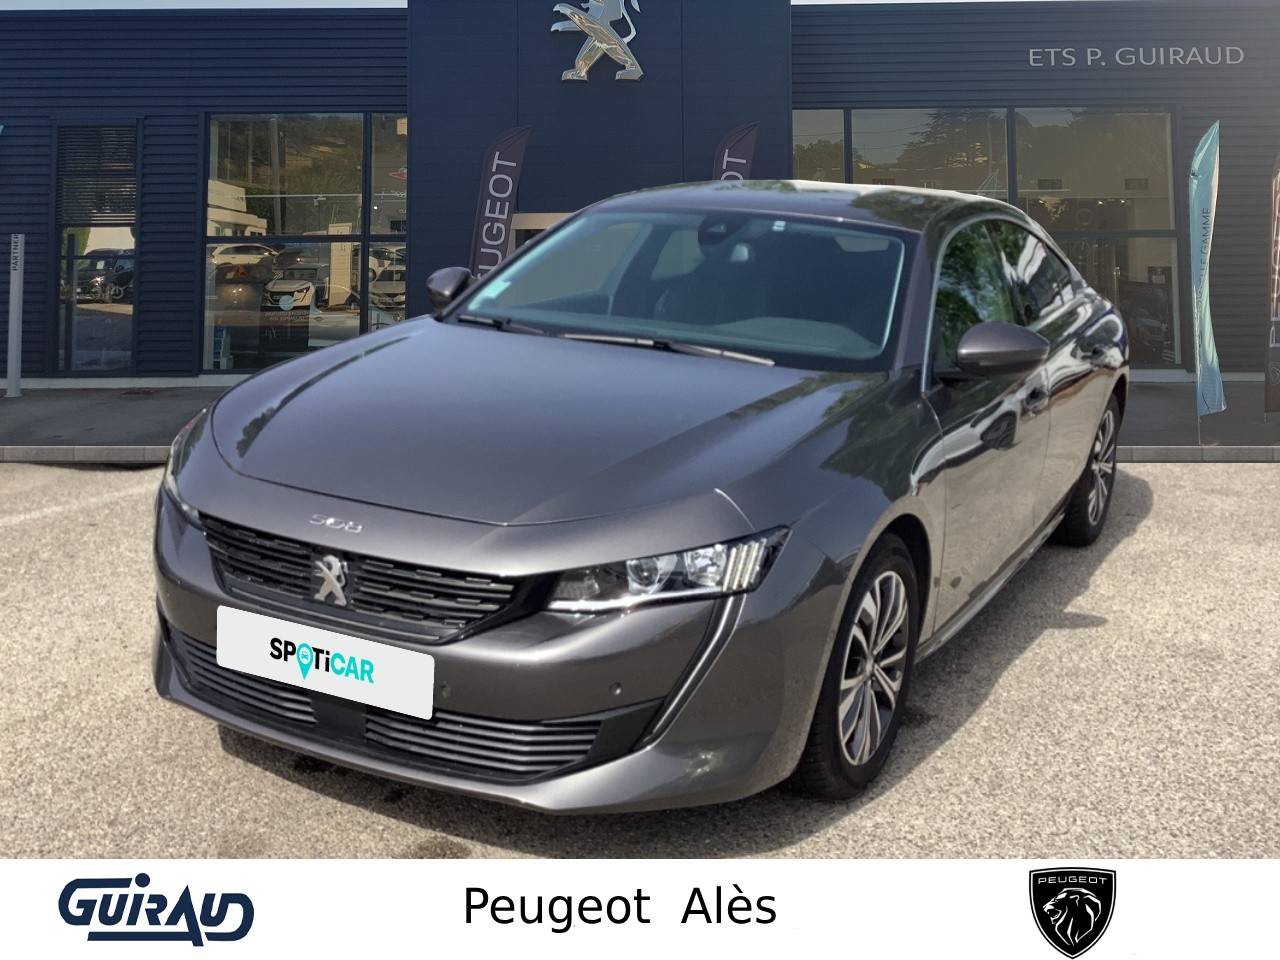 PEUGEOT 508 | 508 BlueHDi 130 ch S&S EAT8 occasion - Peugeot Alès